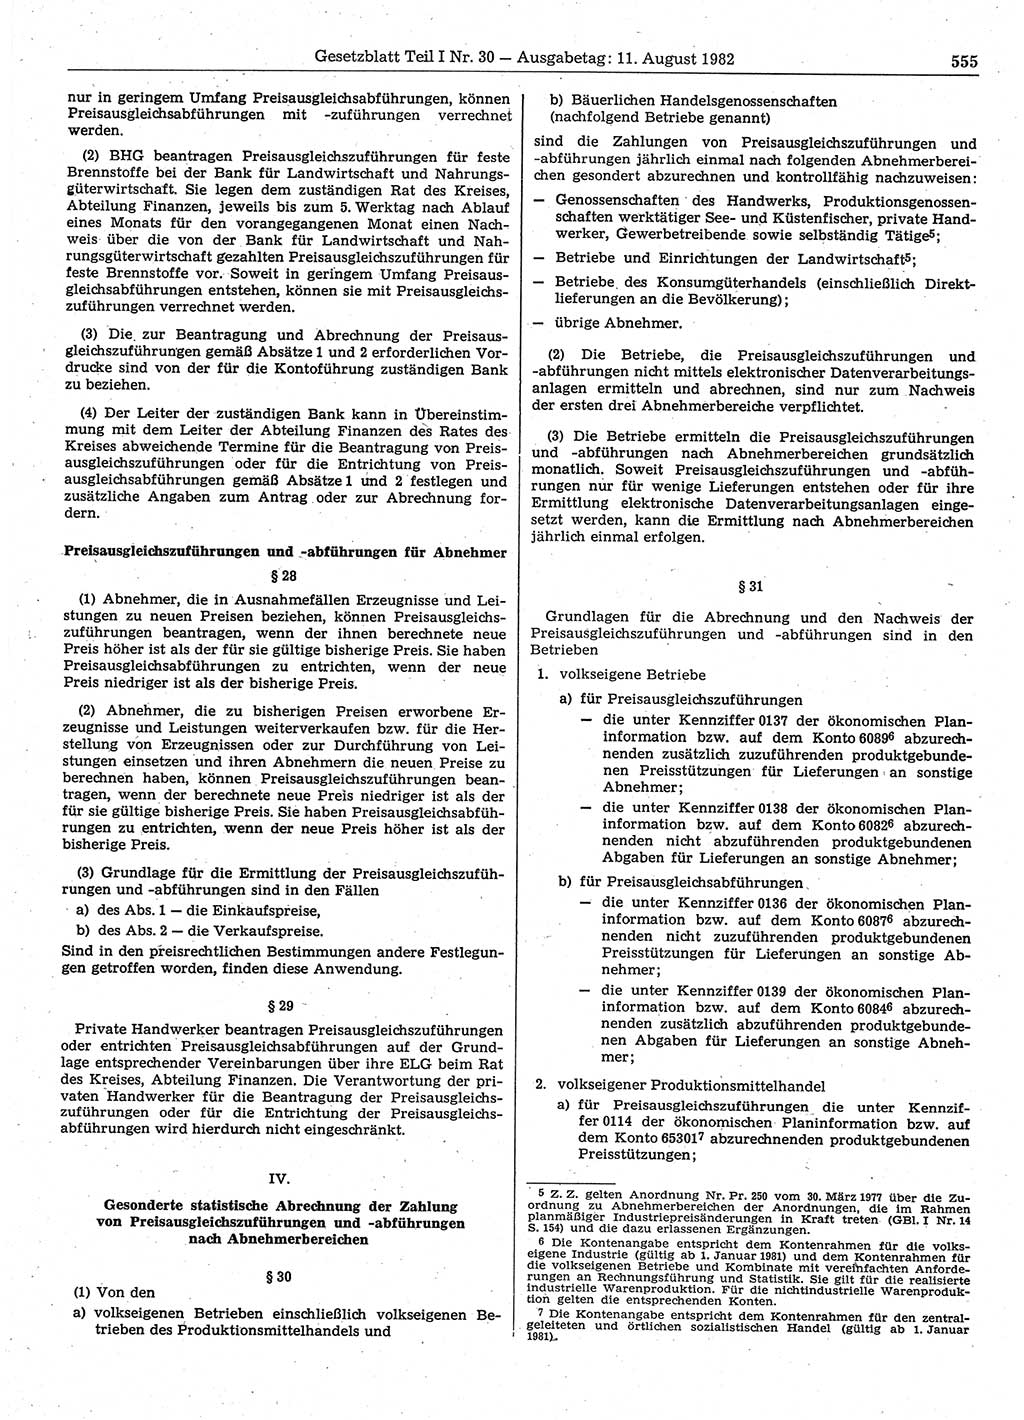 Gesetzblatt (GBl.) der Deutschen Demokratischen Republik (DDR) Teil Ⅰ 1982, Seite 555 (GBl. DDR Ⅰ 1982, S. 555)